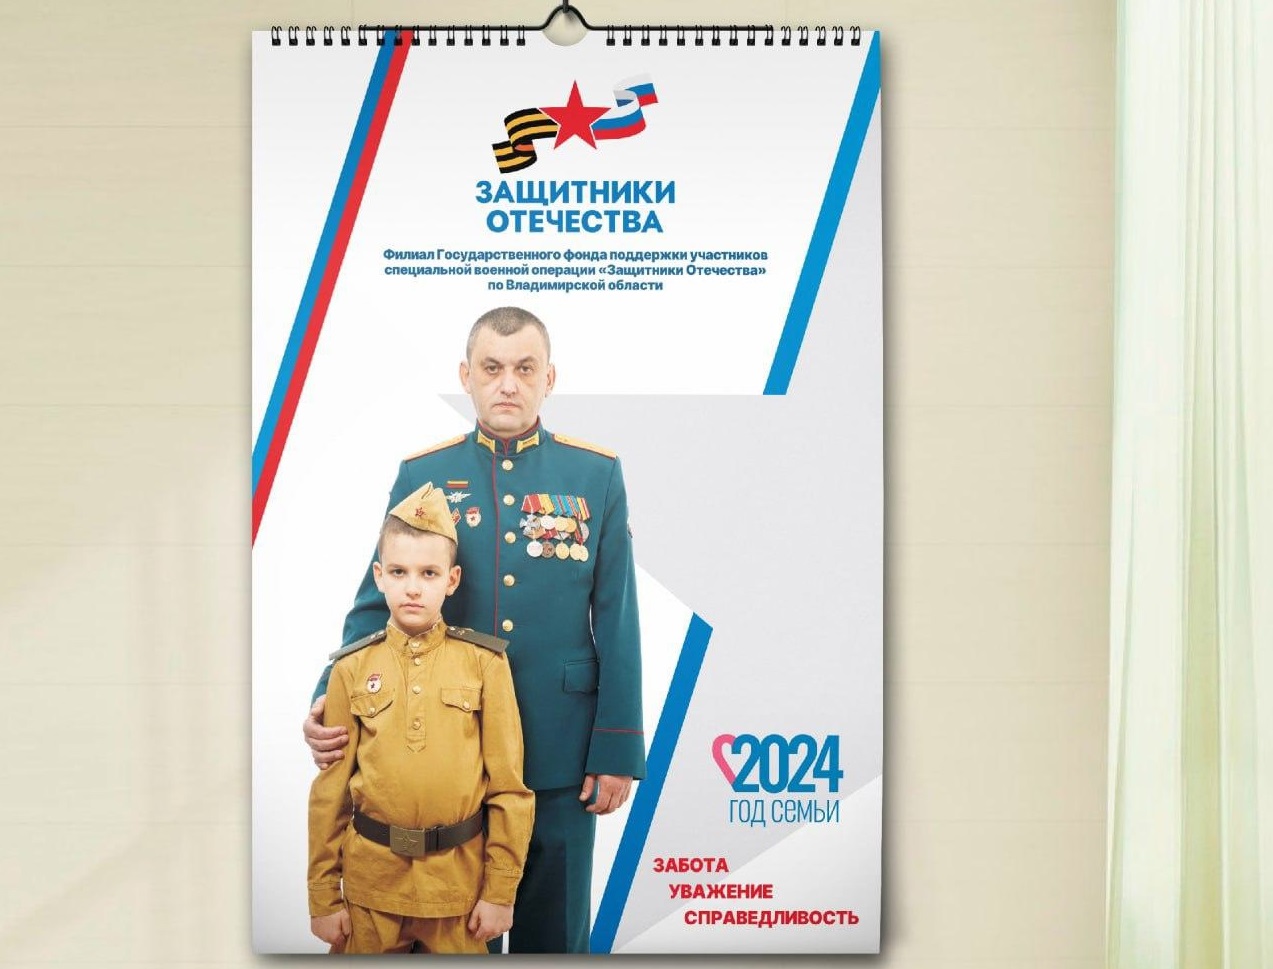 Во Владимирской области выпустили календарь с земляками-участниками СВО 